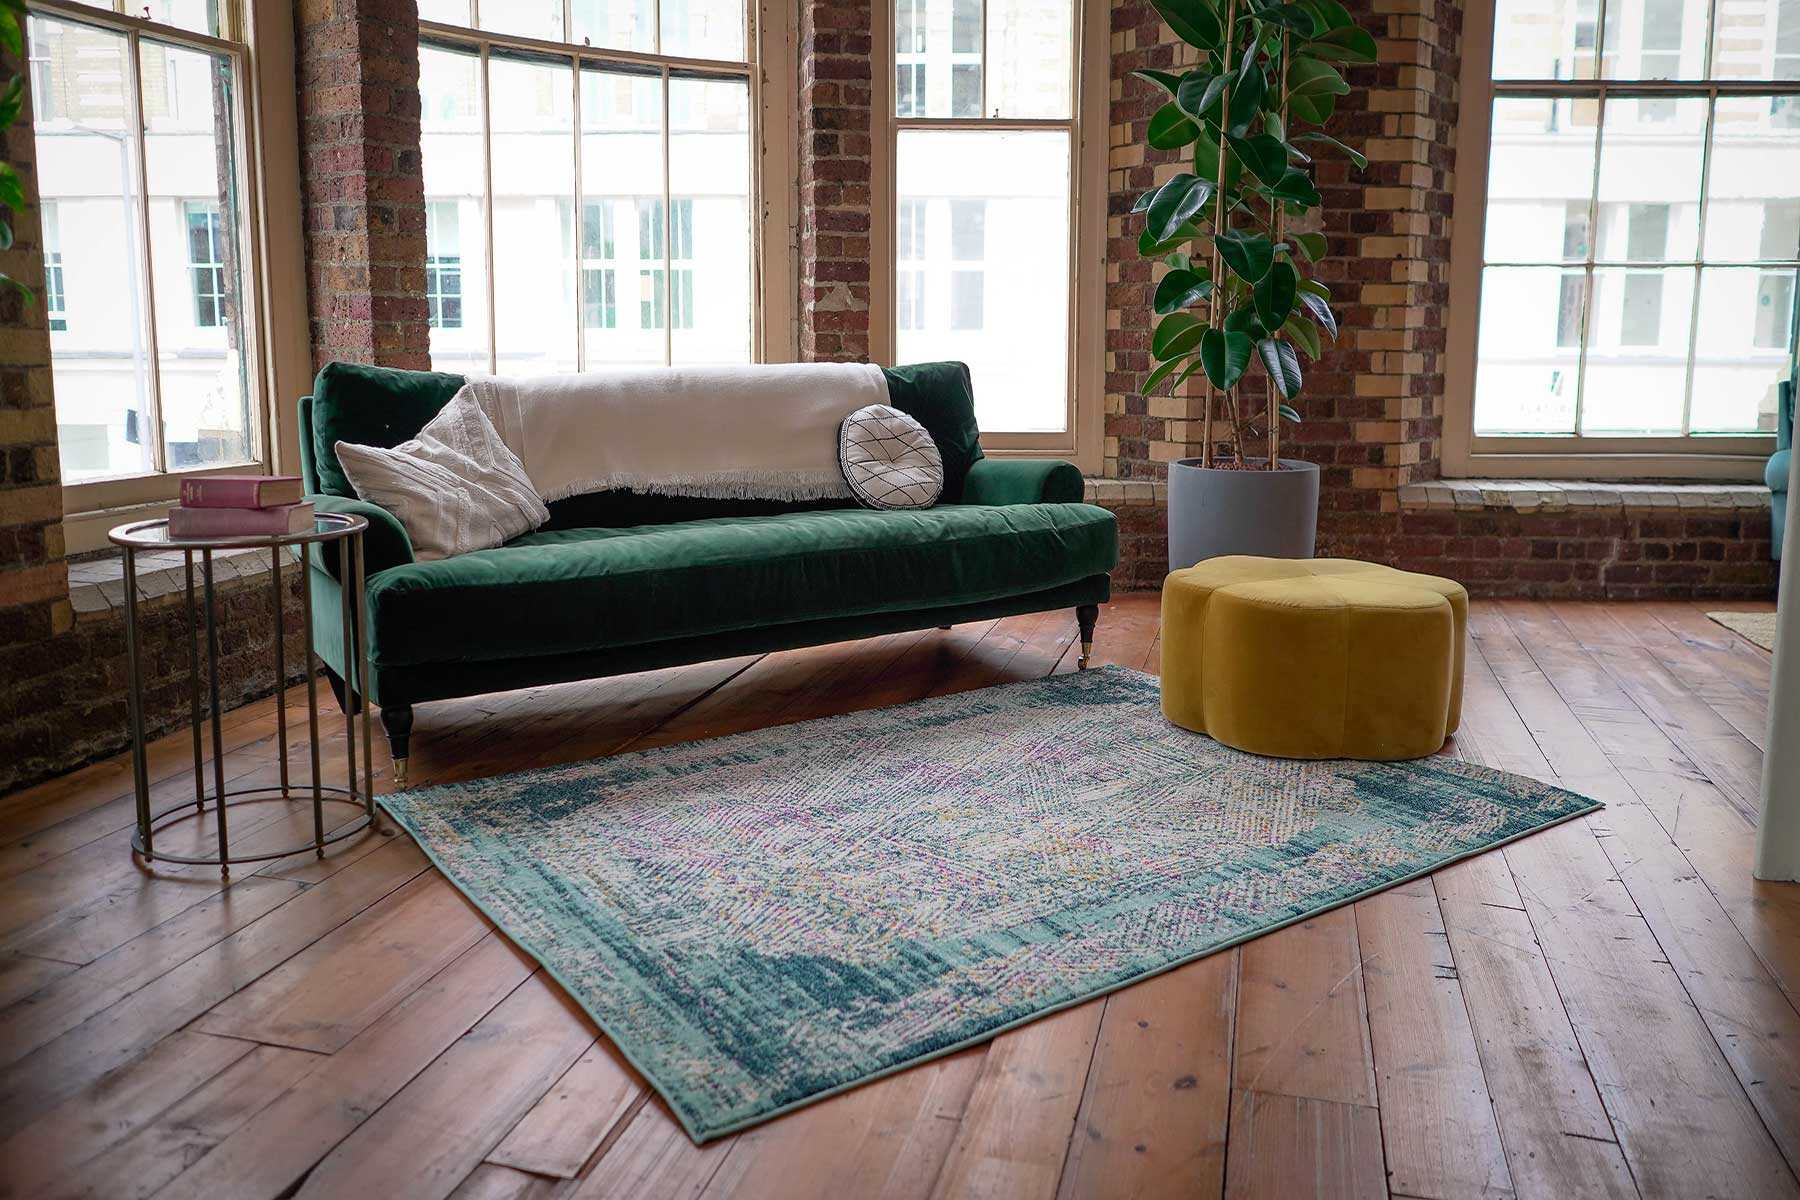 what makes a rug, a modern rug?